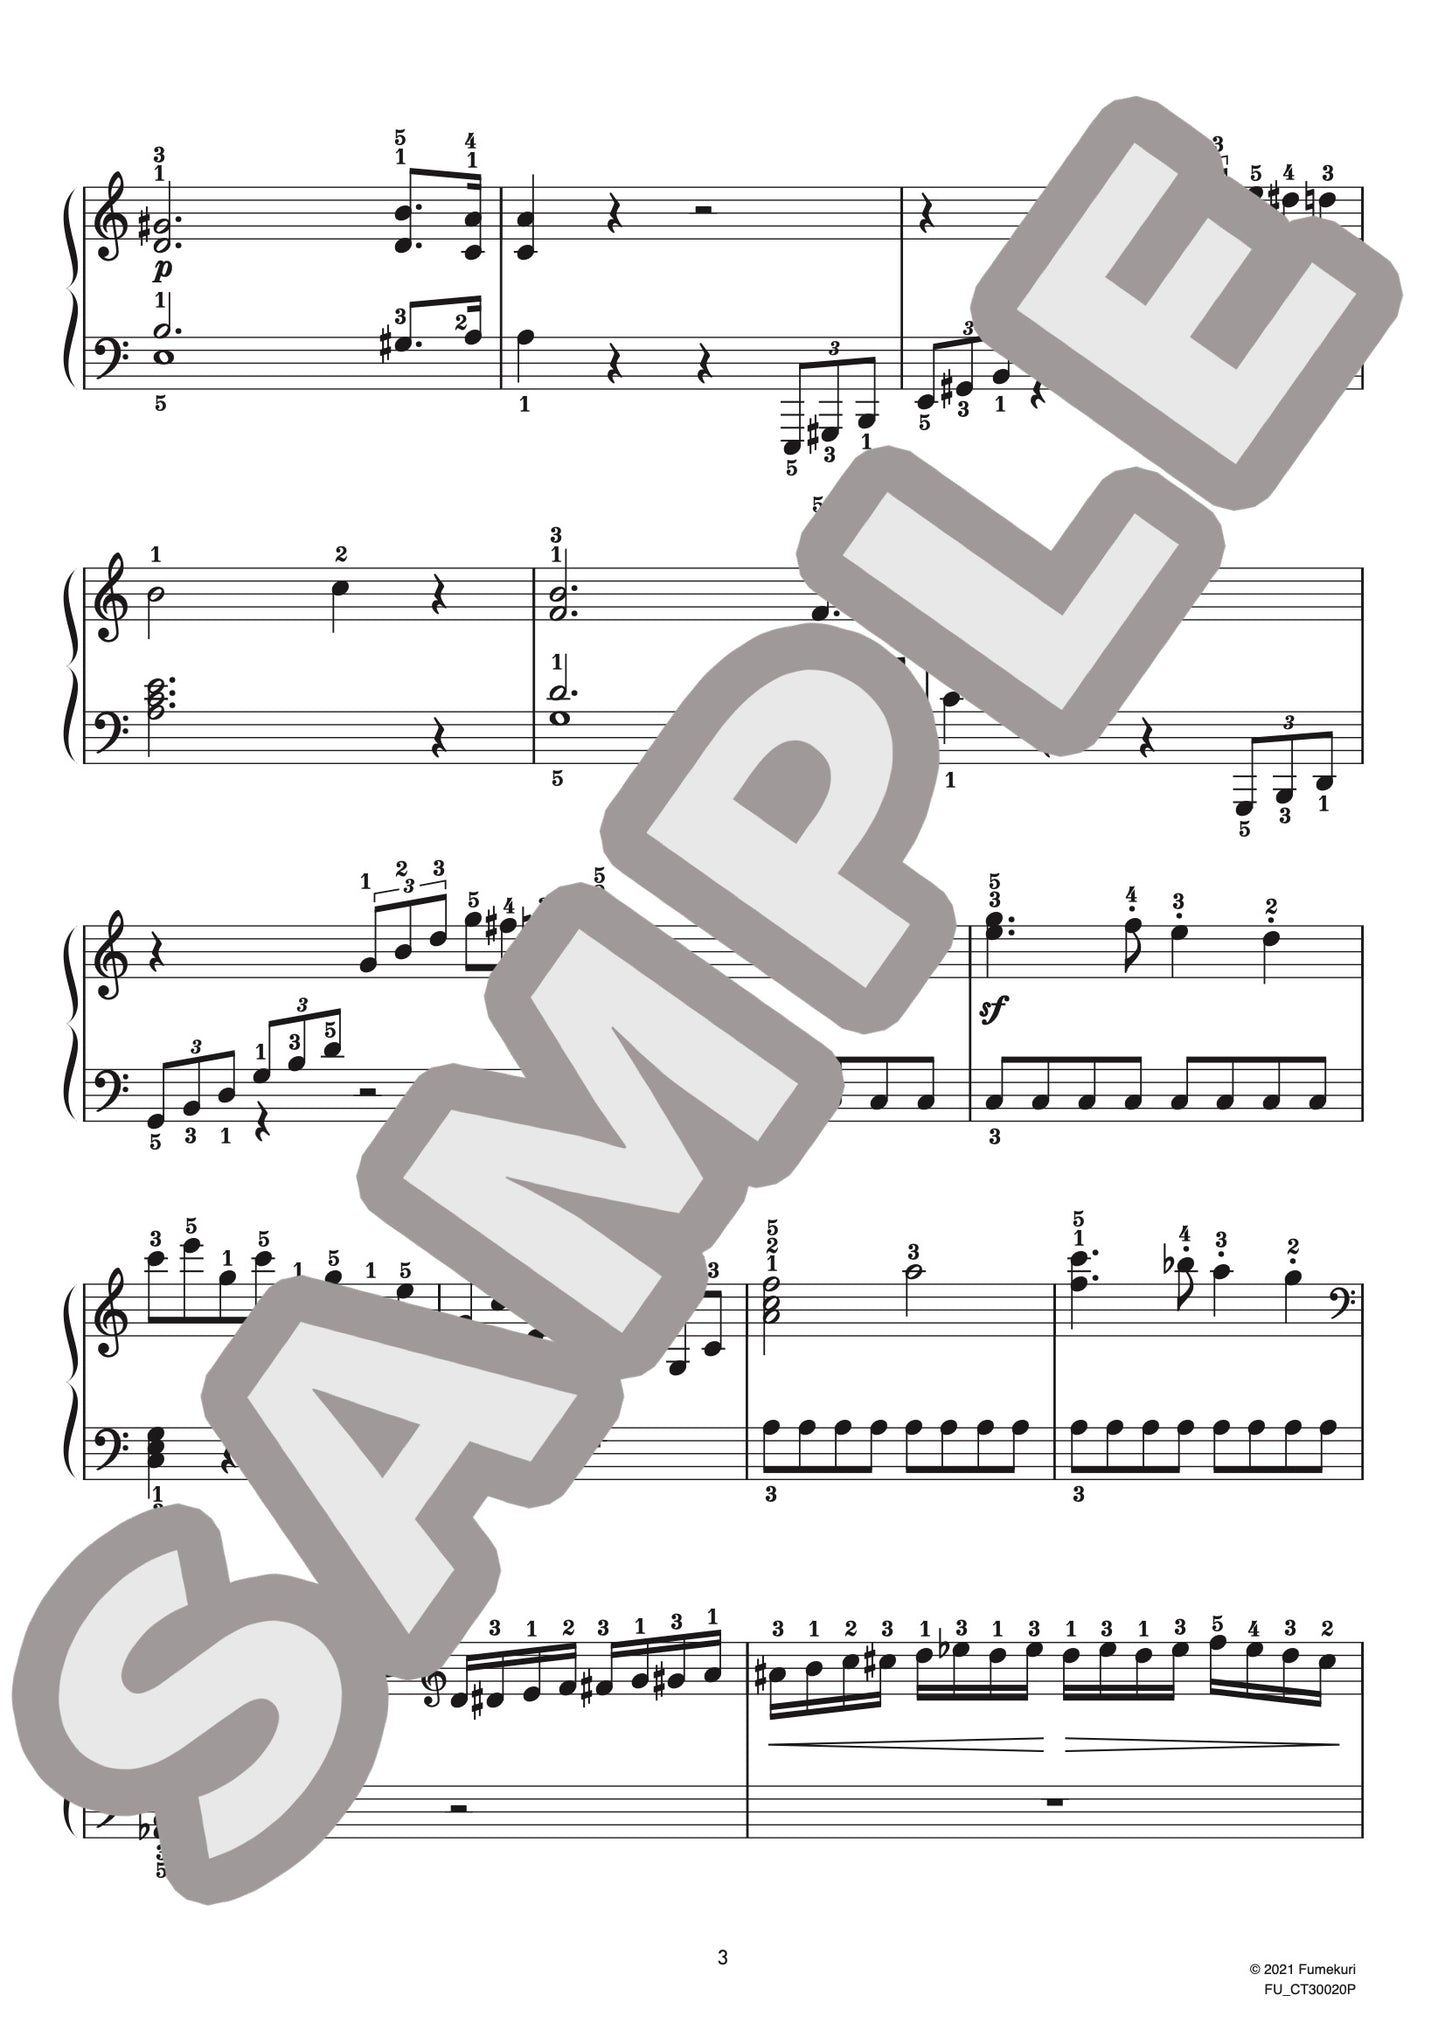 ピアノ協奏曲 第3番 第1楽章（ルートヴィヒ・ヴァン・ベートーヴェン) / クラシック・オリジナル楽曲【初中級】